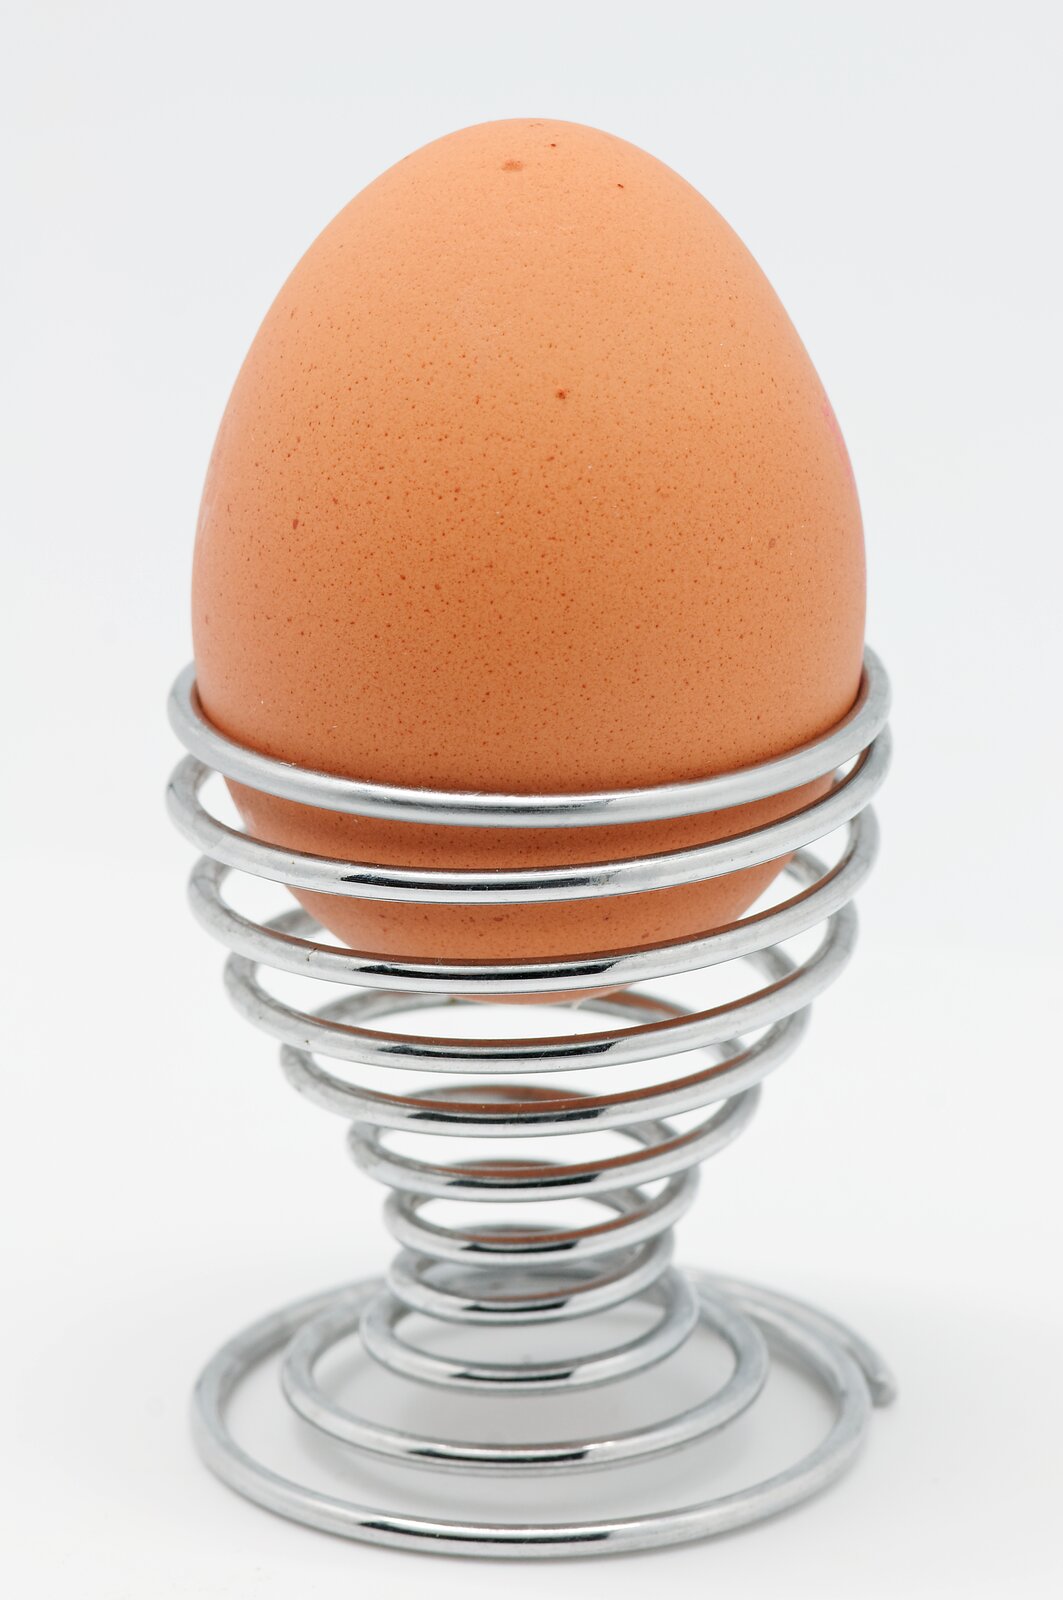 Zdjęcie przedstawia jajko stojące w metalowym kieliszku.